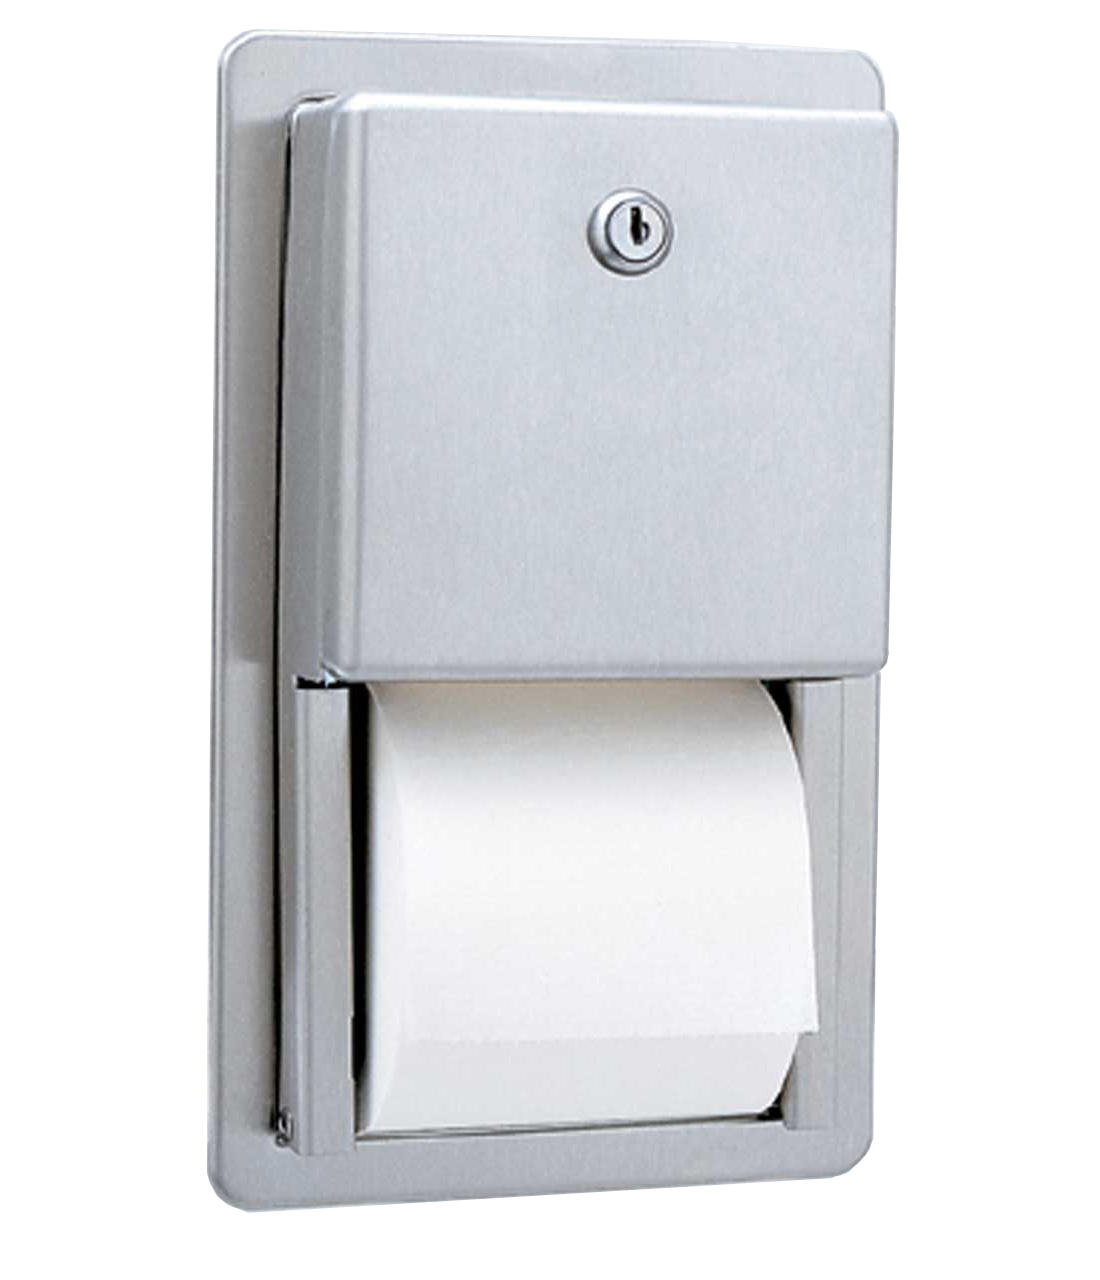 Recessed Multi-Roll Toilet Tissue Dispenser - (Model #: ttd-6)-image